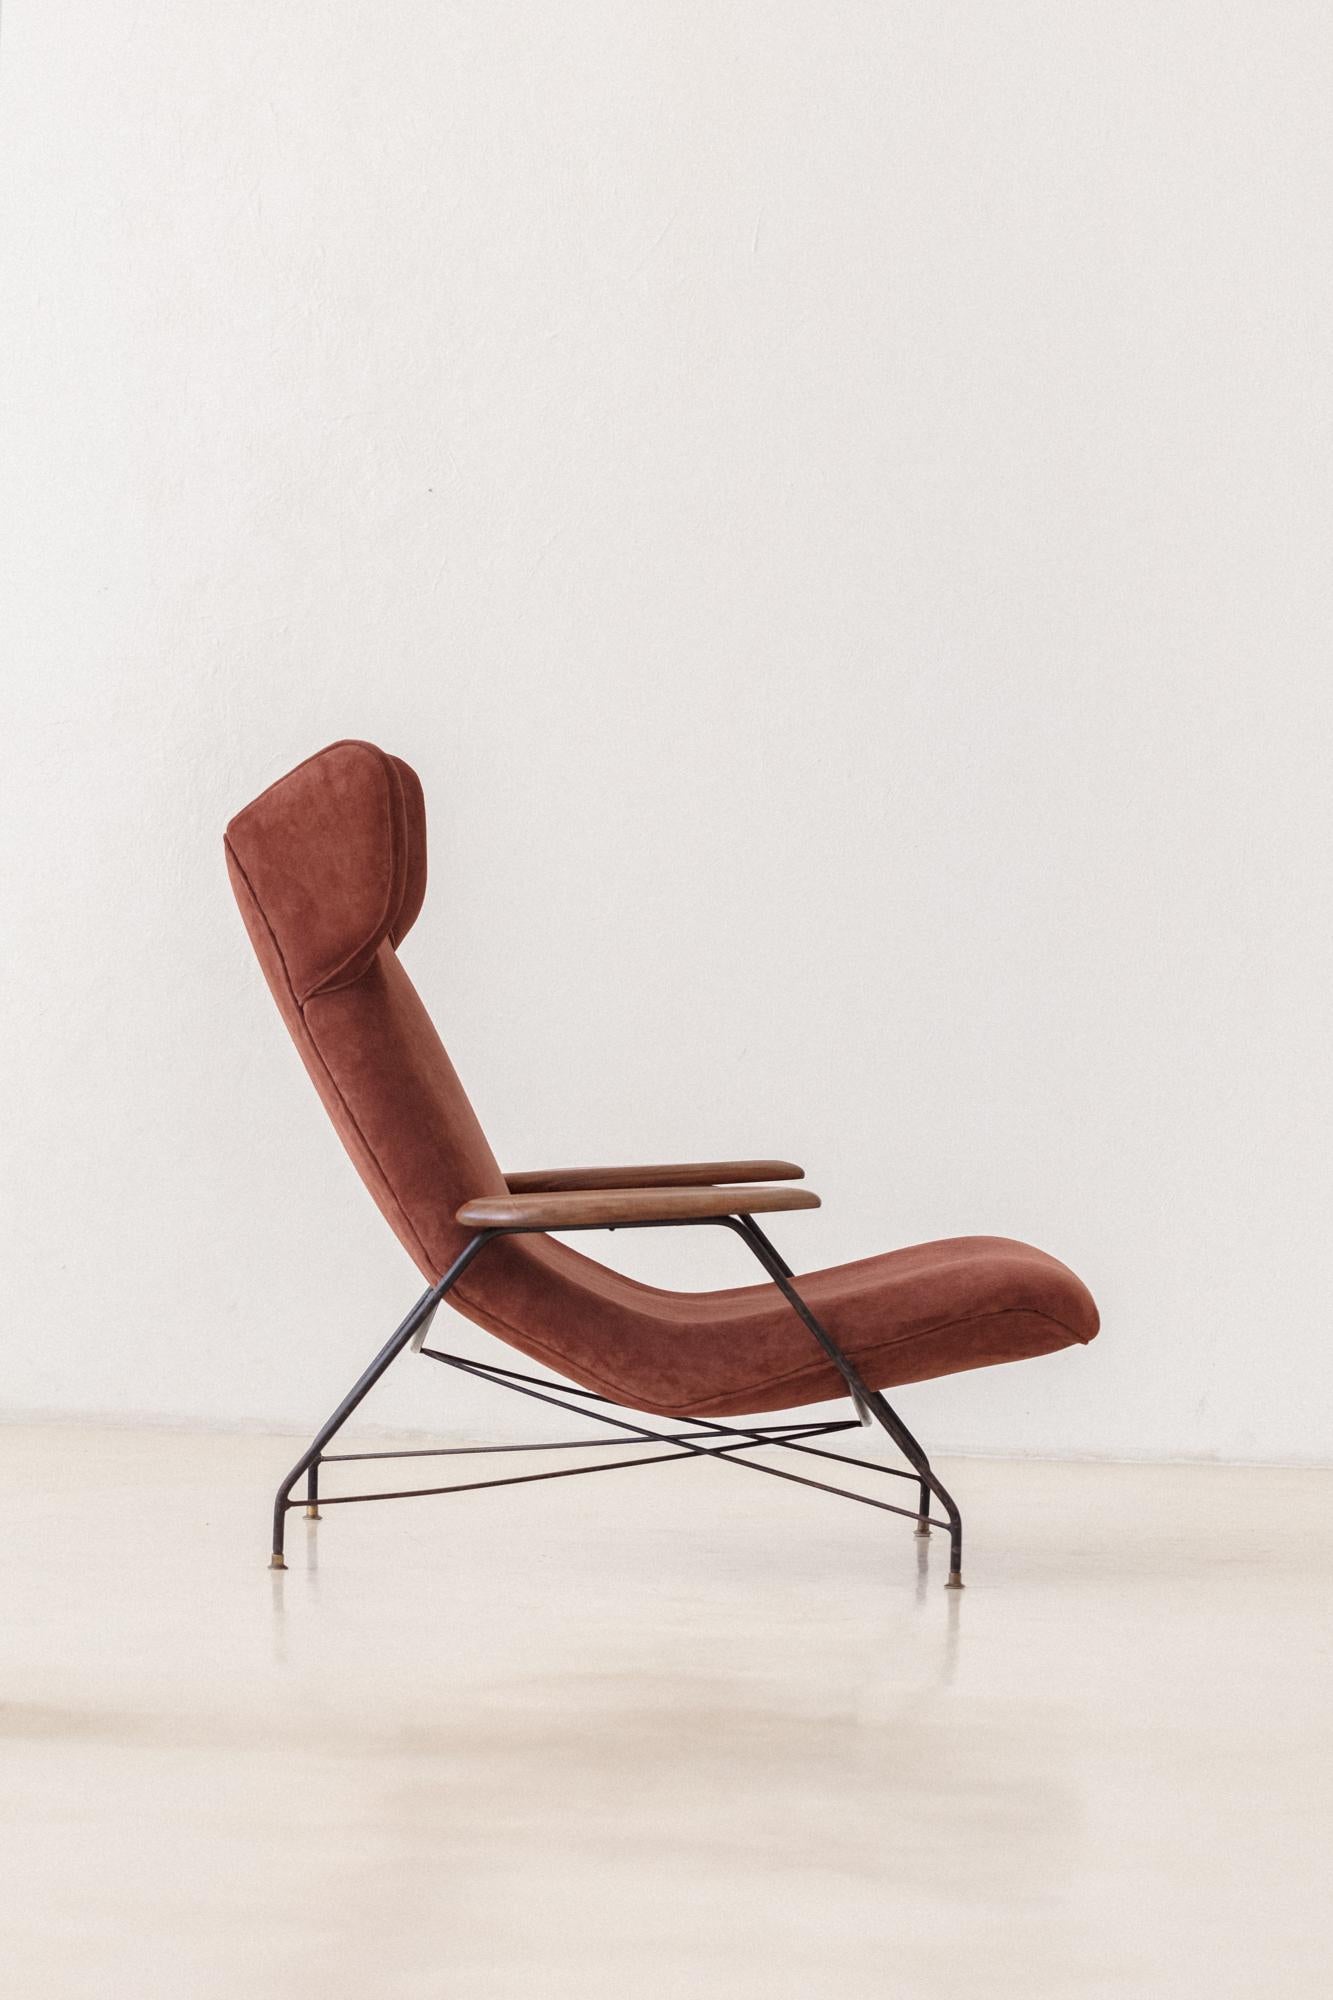 Cette chaise longue est l'un des fantastiques designs de Martin Eisler (1913-1977) et a été produite par Móveis Artesanal puis par Forma S.A. Móveis e Objetos de Arte. La Galeria Atesanal, la première salle d'exposition qui présentait les meubles et